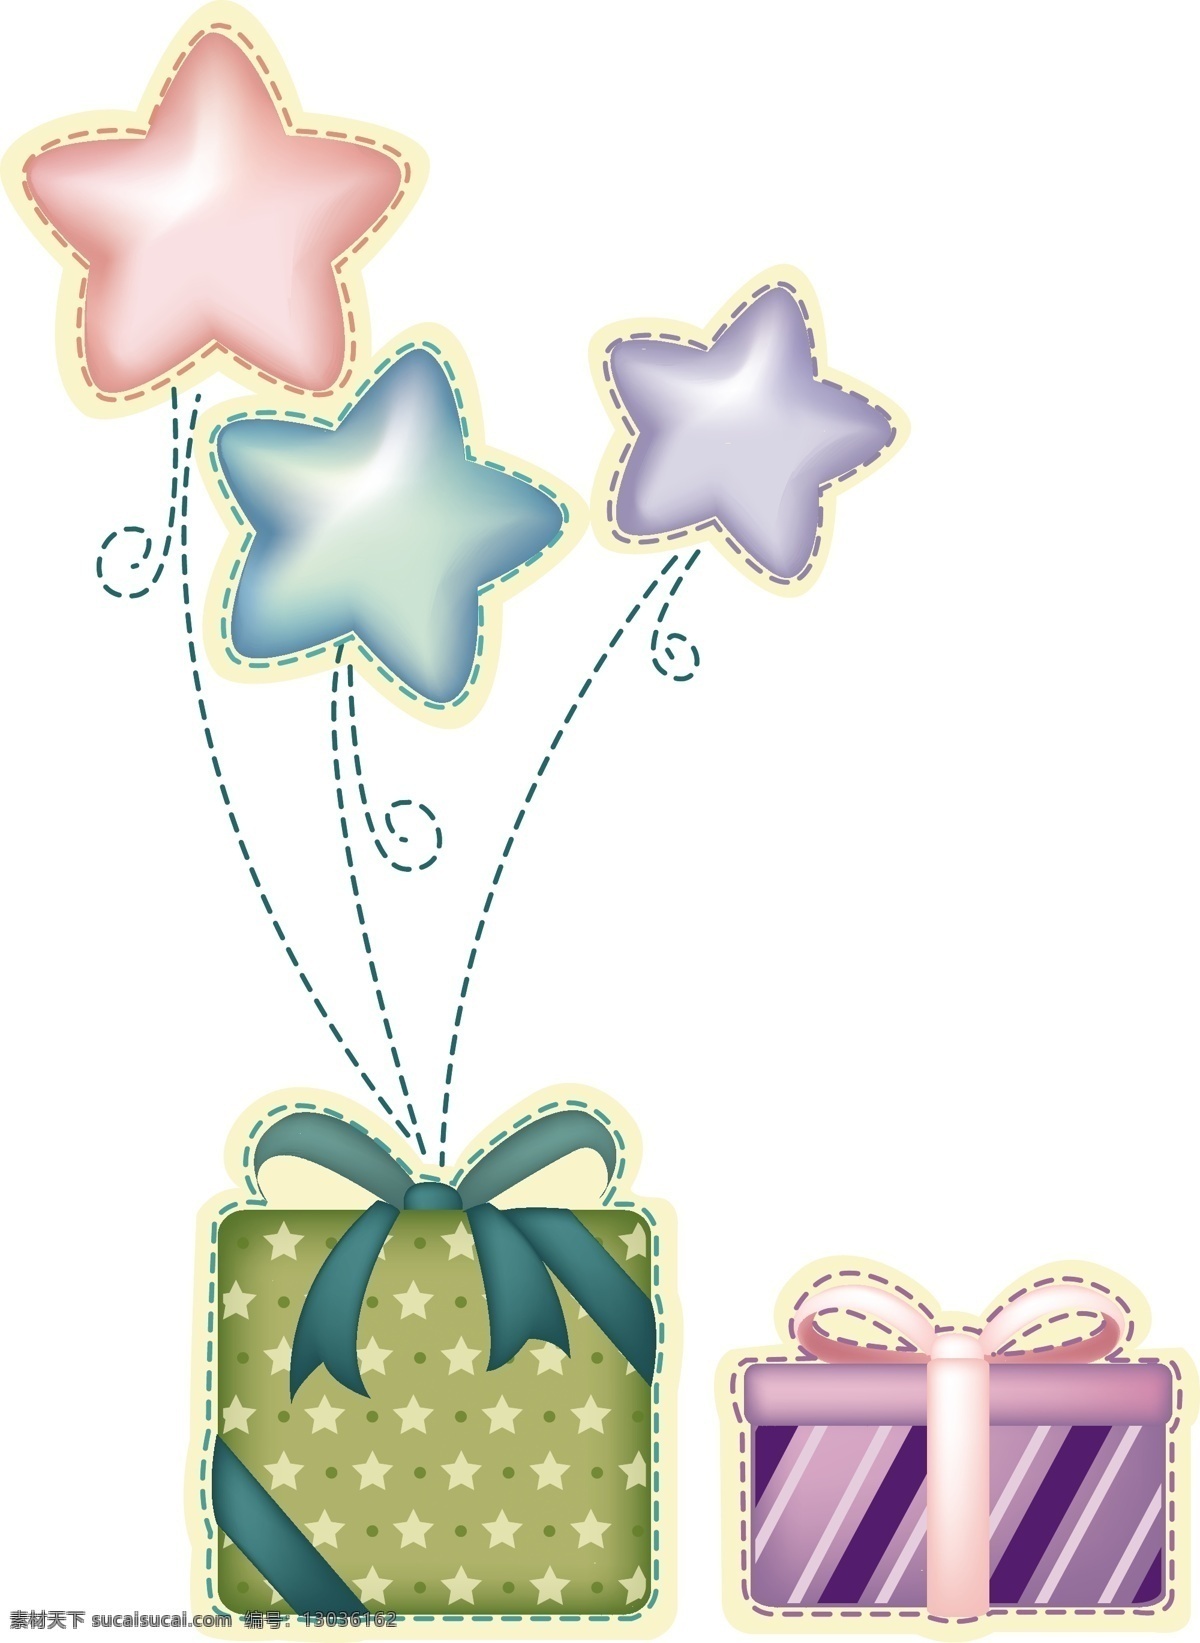 礼品 礼物 盒子 爱心 包装 蝴蝶结 模板 设计稿 水晶 丝带 质感 素材元素 源文件 矢量图